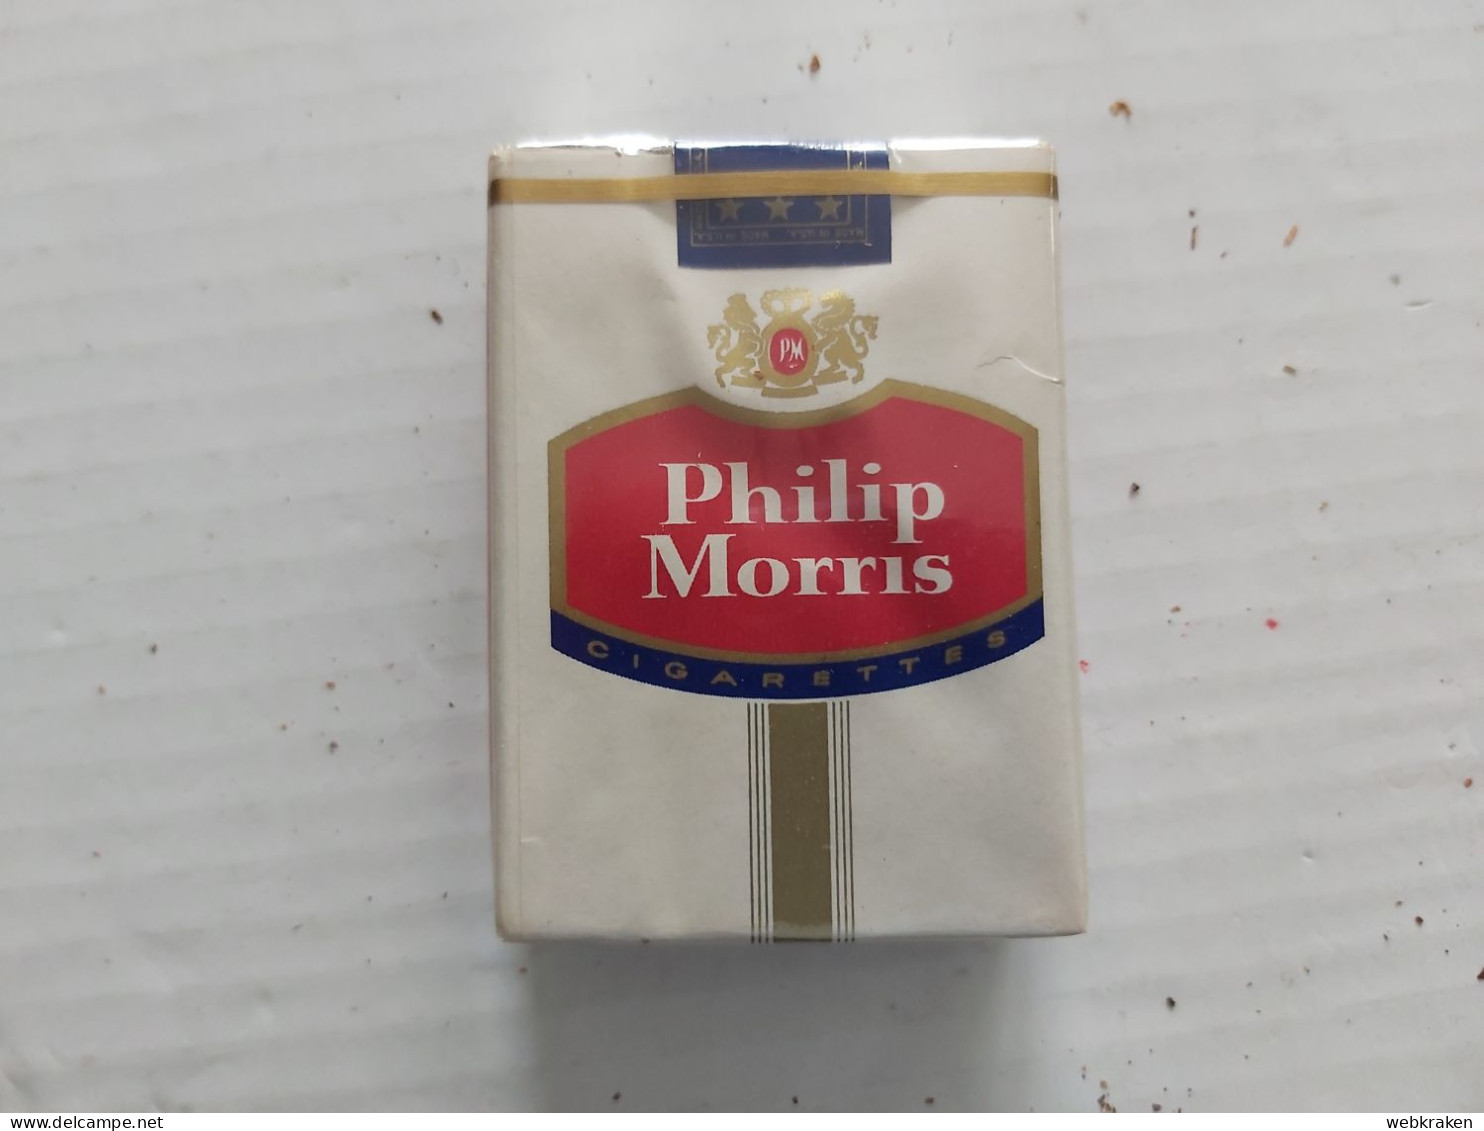 PACCHETTO SIGARETTE PIENO TABACCO FUMO TABACS WITH ORIGINAL CIGARETTES TOBACCO MARCA PHILIP MORRIS U.S.A. CON SIGARETTE - Fuma Cigarrillos